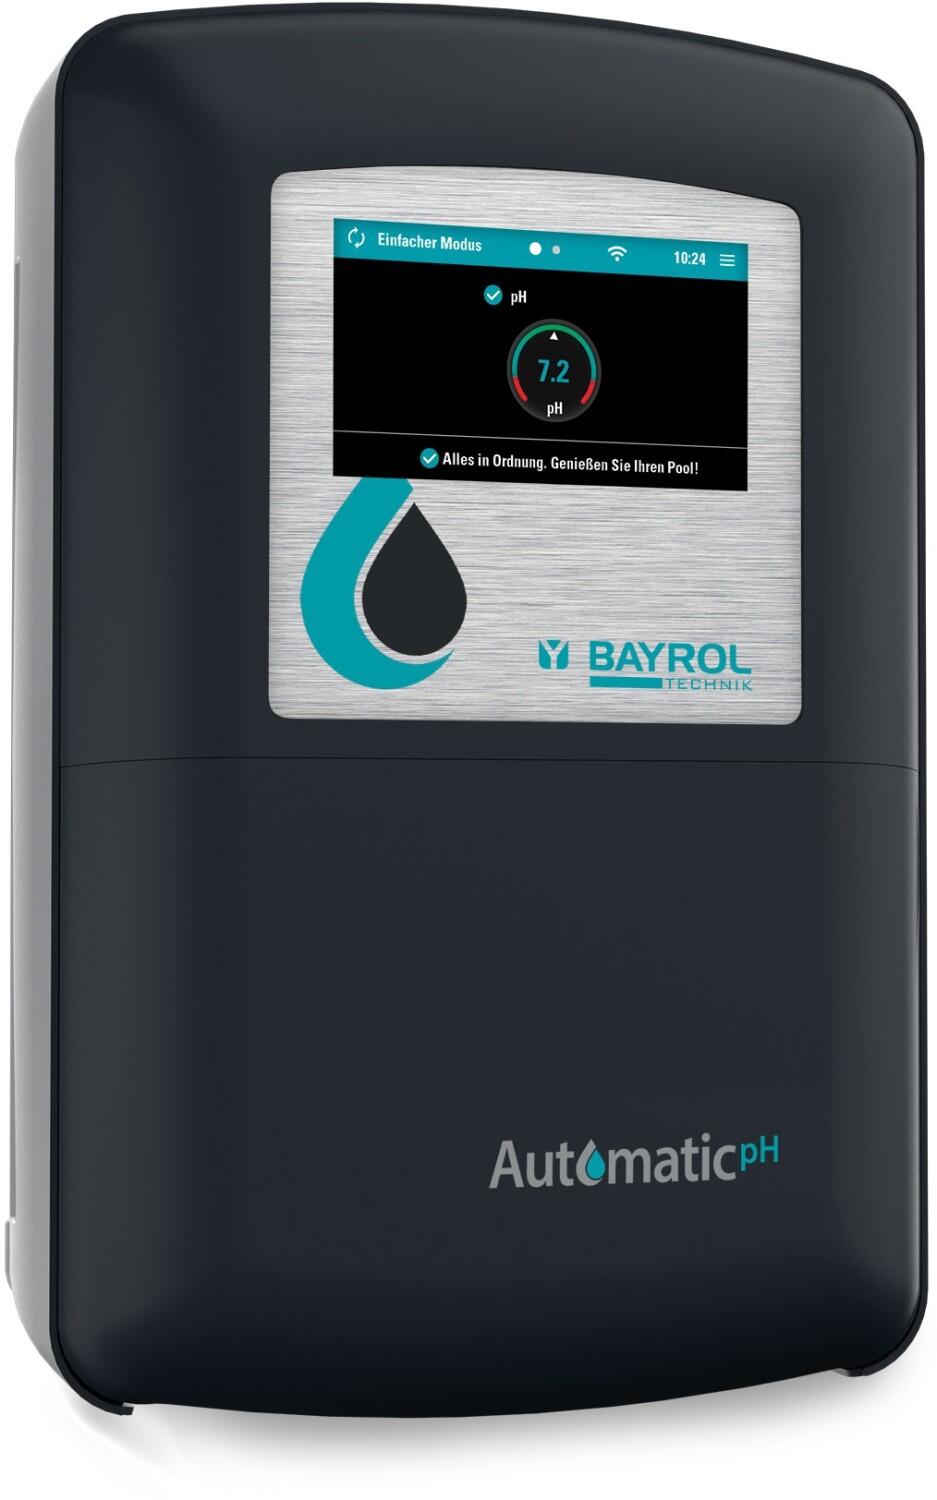 Bayrol Automatic pH zur Regelung des pH-Wertes, Modell 2022